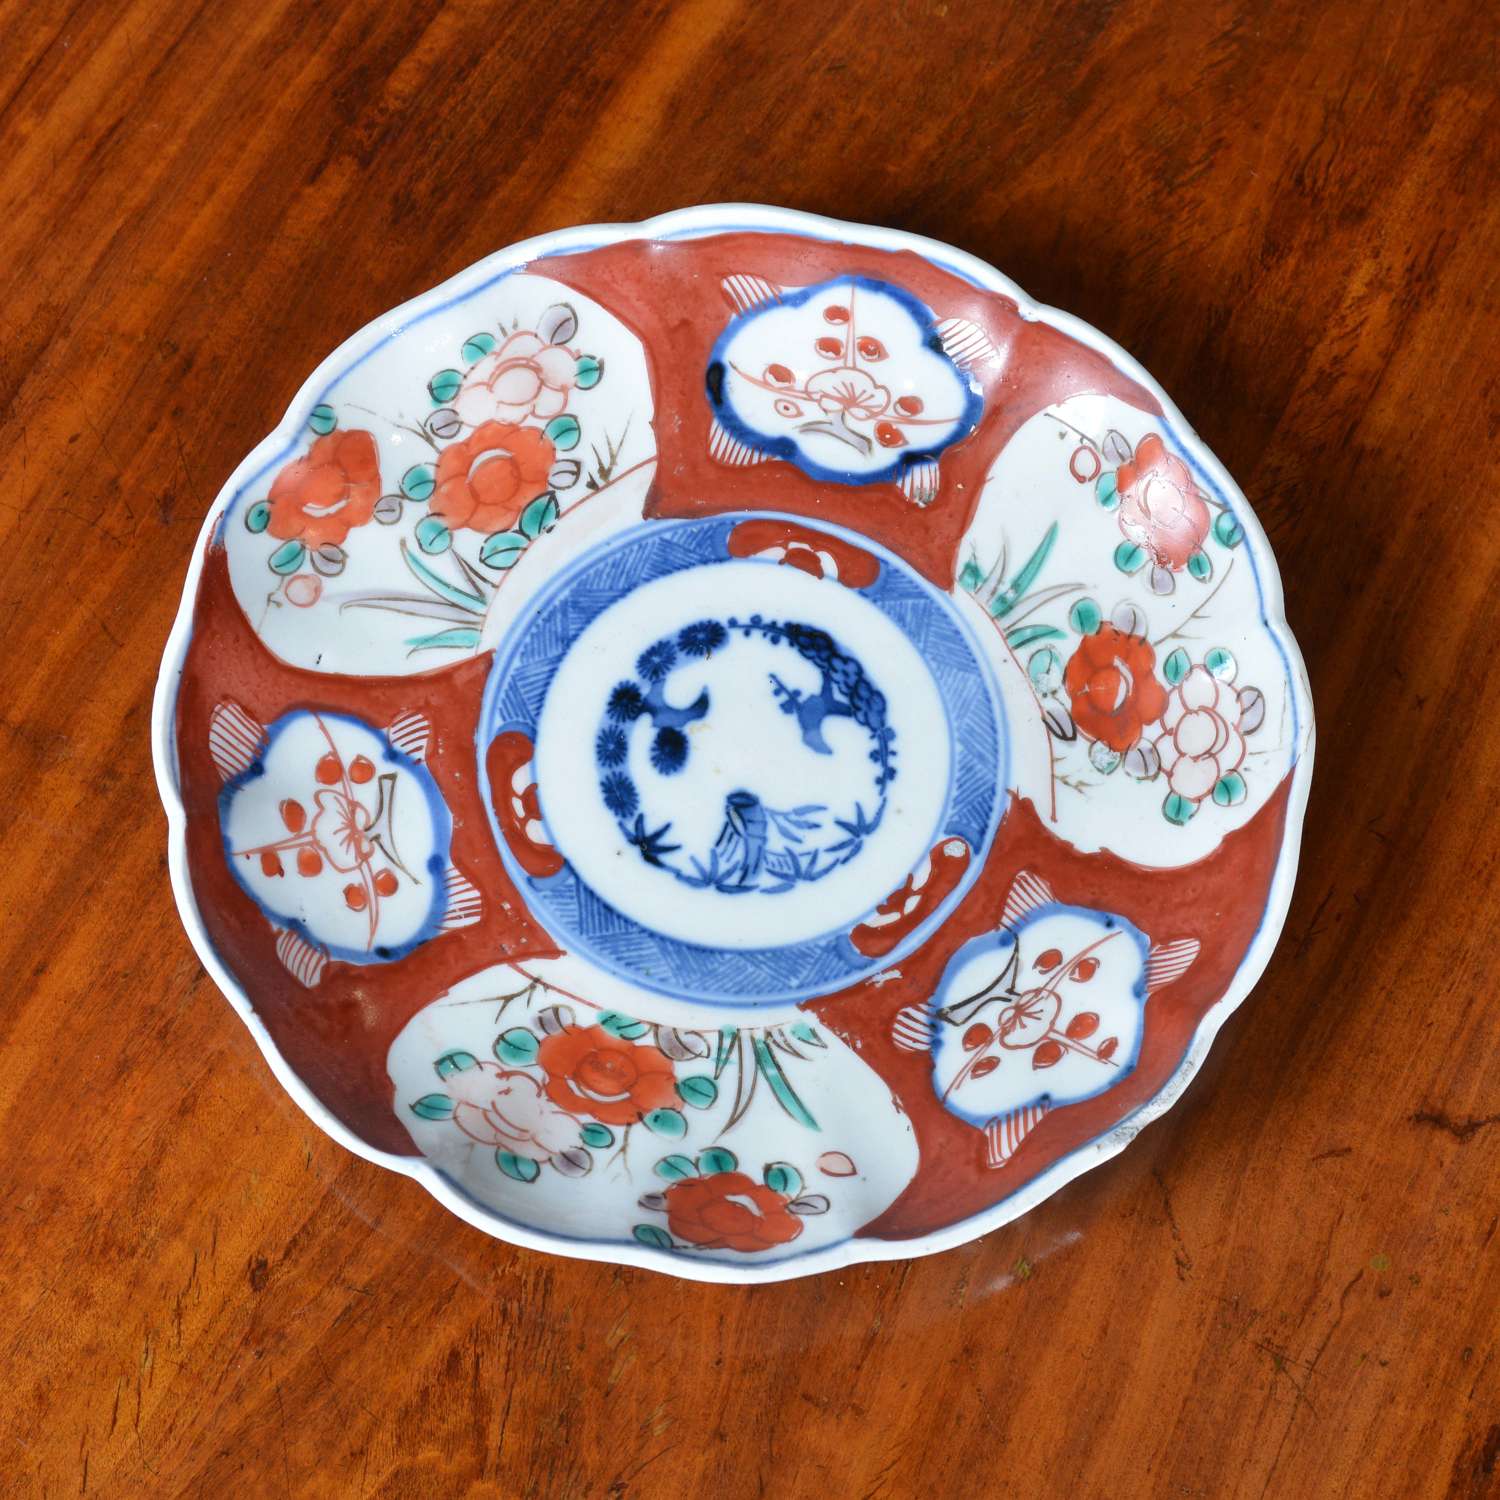 19th century Japanese Imari plate